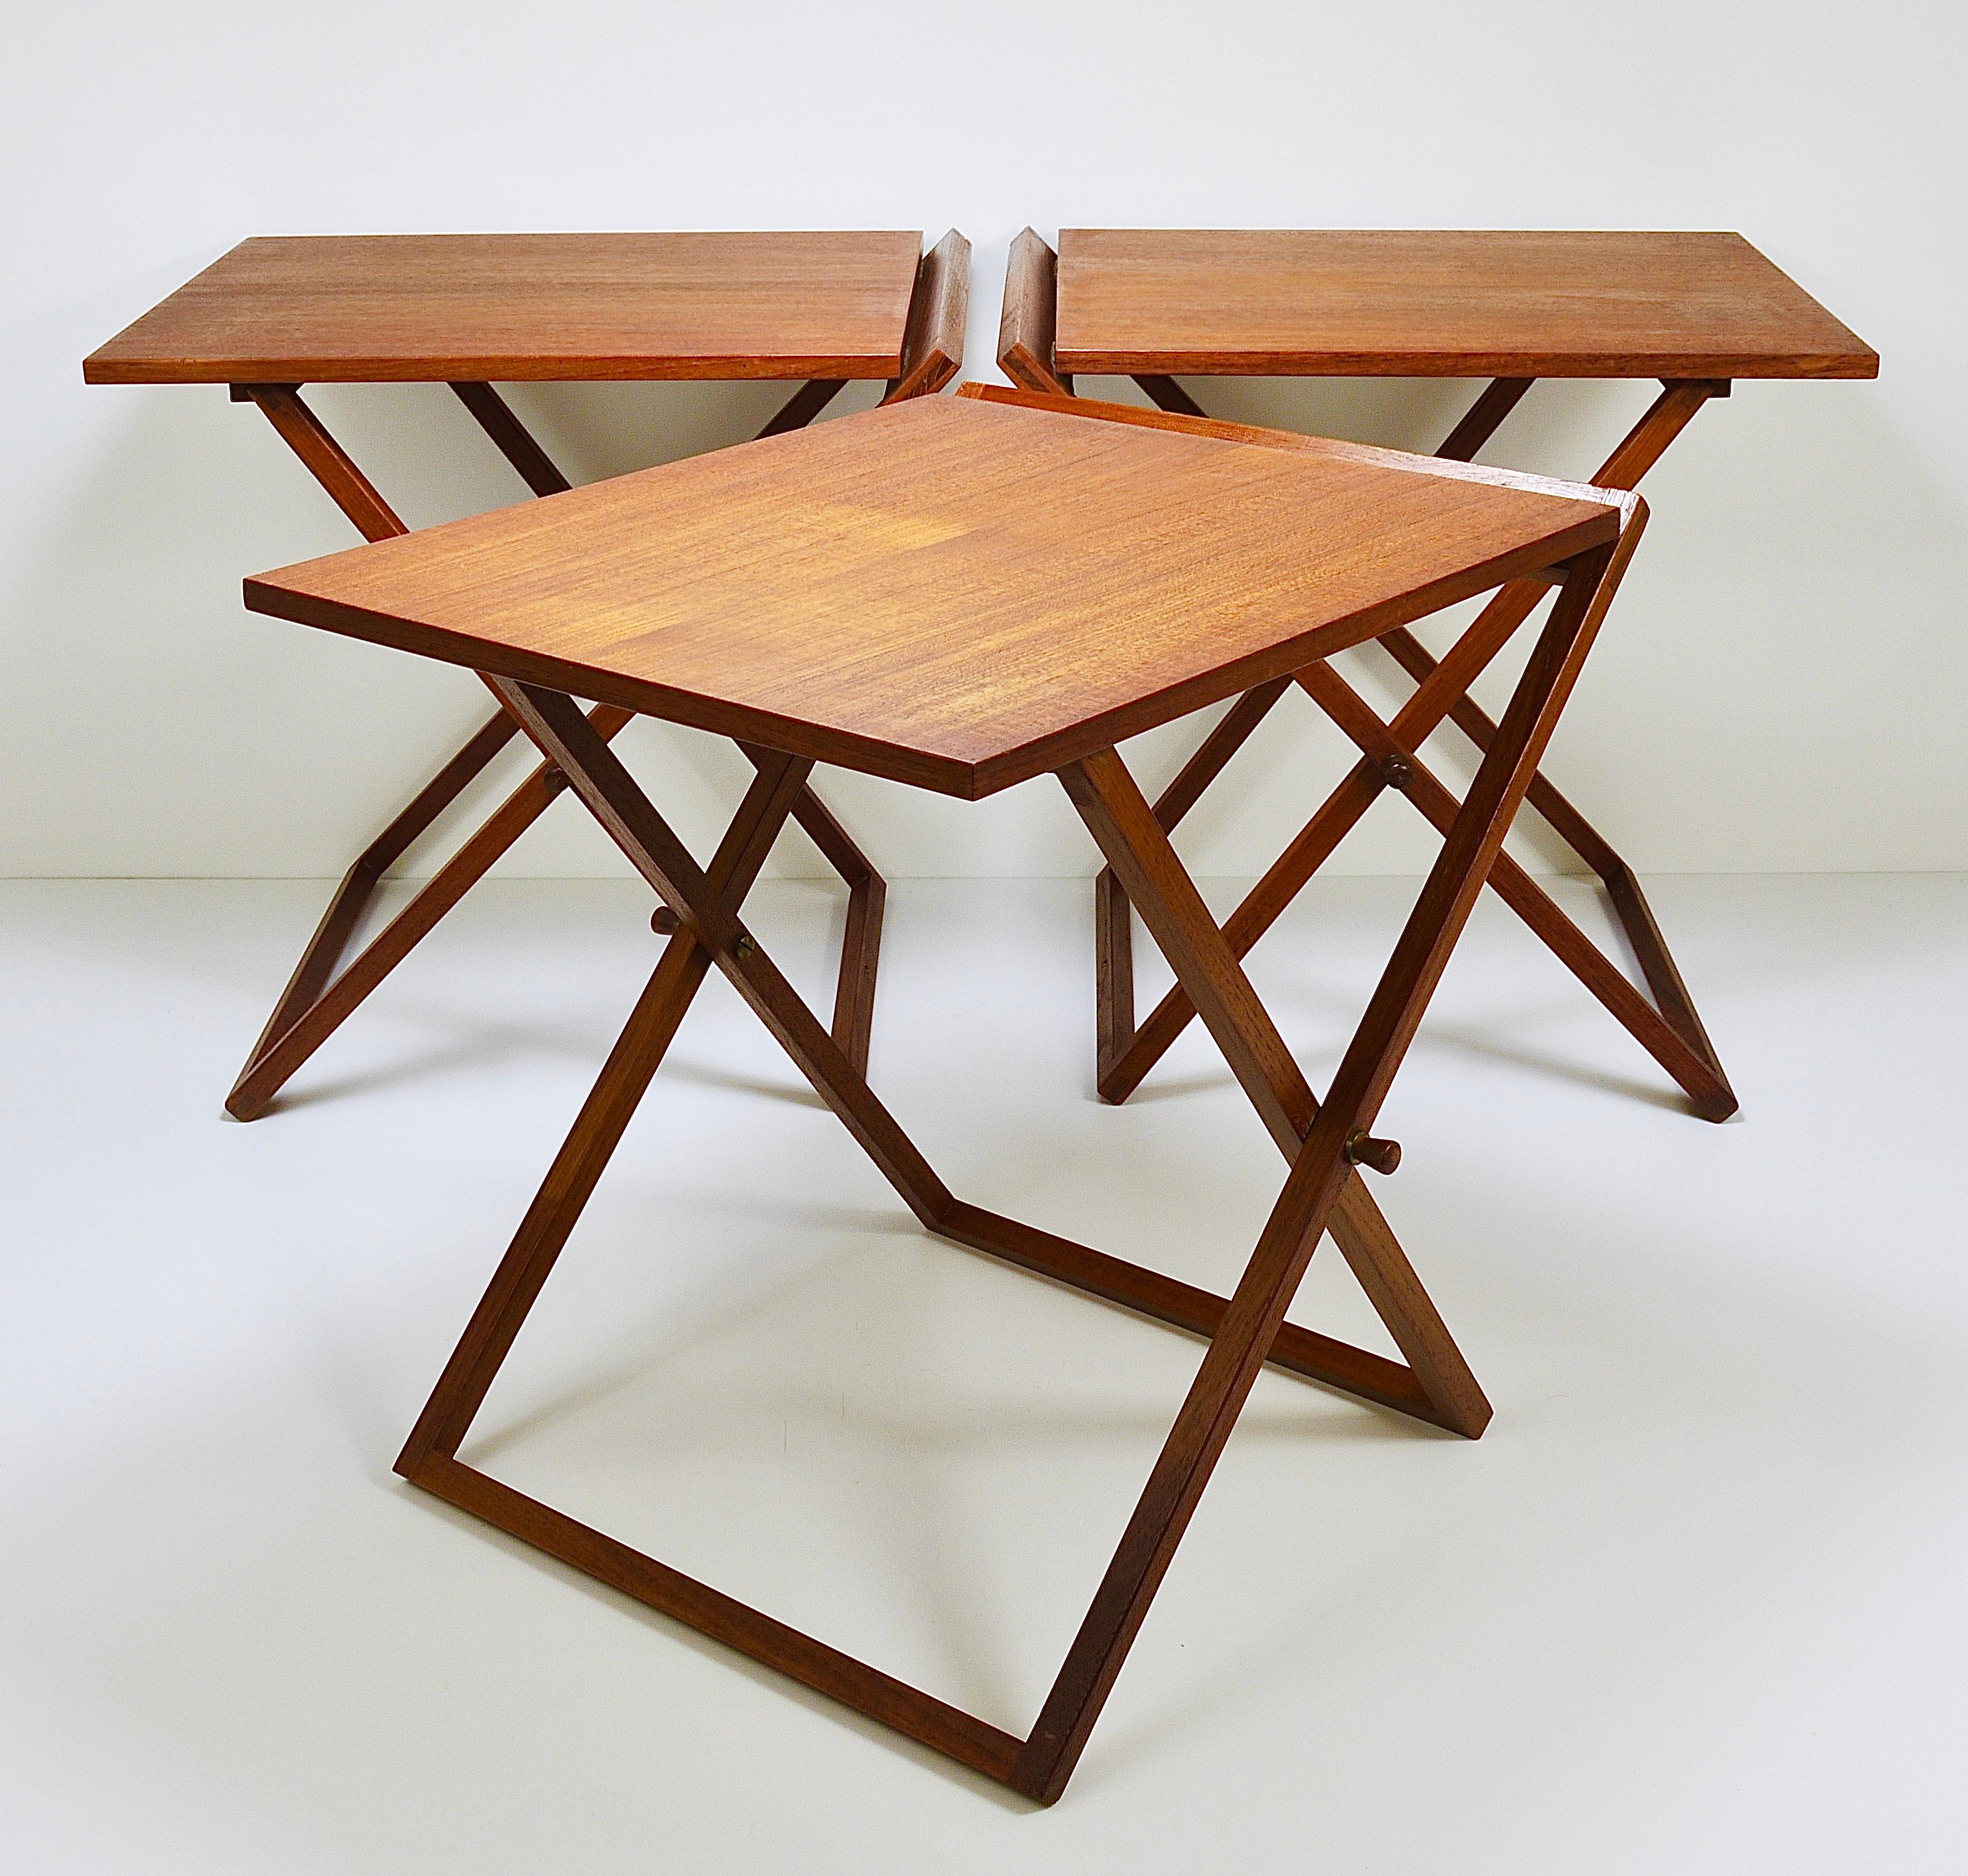 Bis zu drei ausklappbare Mid-Century Modern-Tische aus den 1960er Jahren. Entworfen von Illum Wikkelso, ausgeführt von dem skandinavischen Hersteller CFC Silkeborg Furniture Makers in Dänemark. Verkauft und bepreist pro Stück. Sehr schön